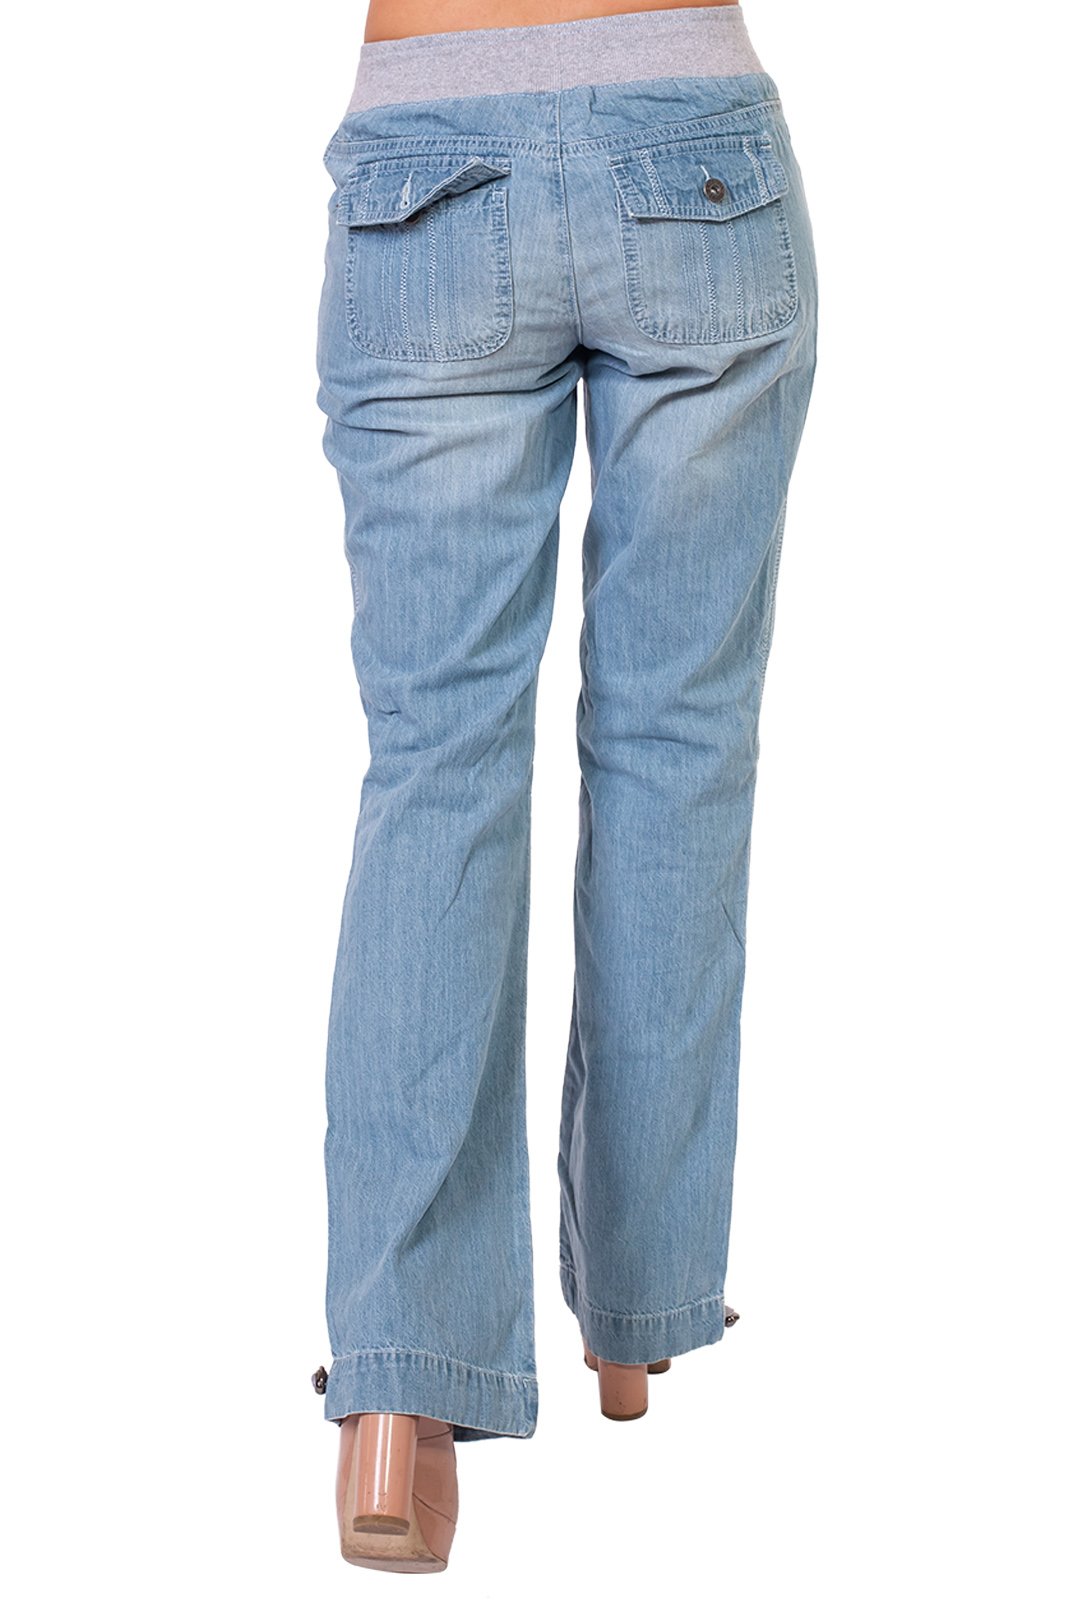 Широкие джинсы на резинке женские. Oklahoma Premium Denim джинсы. Джинсы на резинке женские. Широкие джинсы на резинке. Джинсы с резинкой на поясе женские.